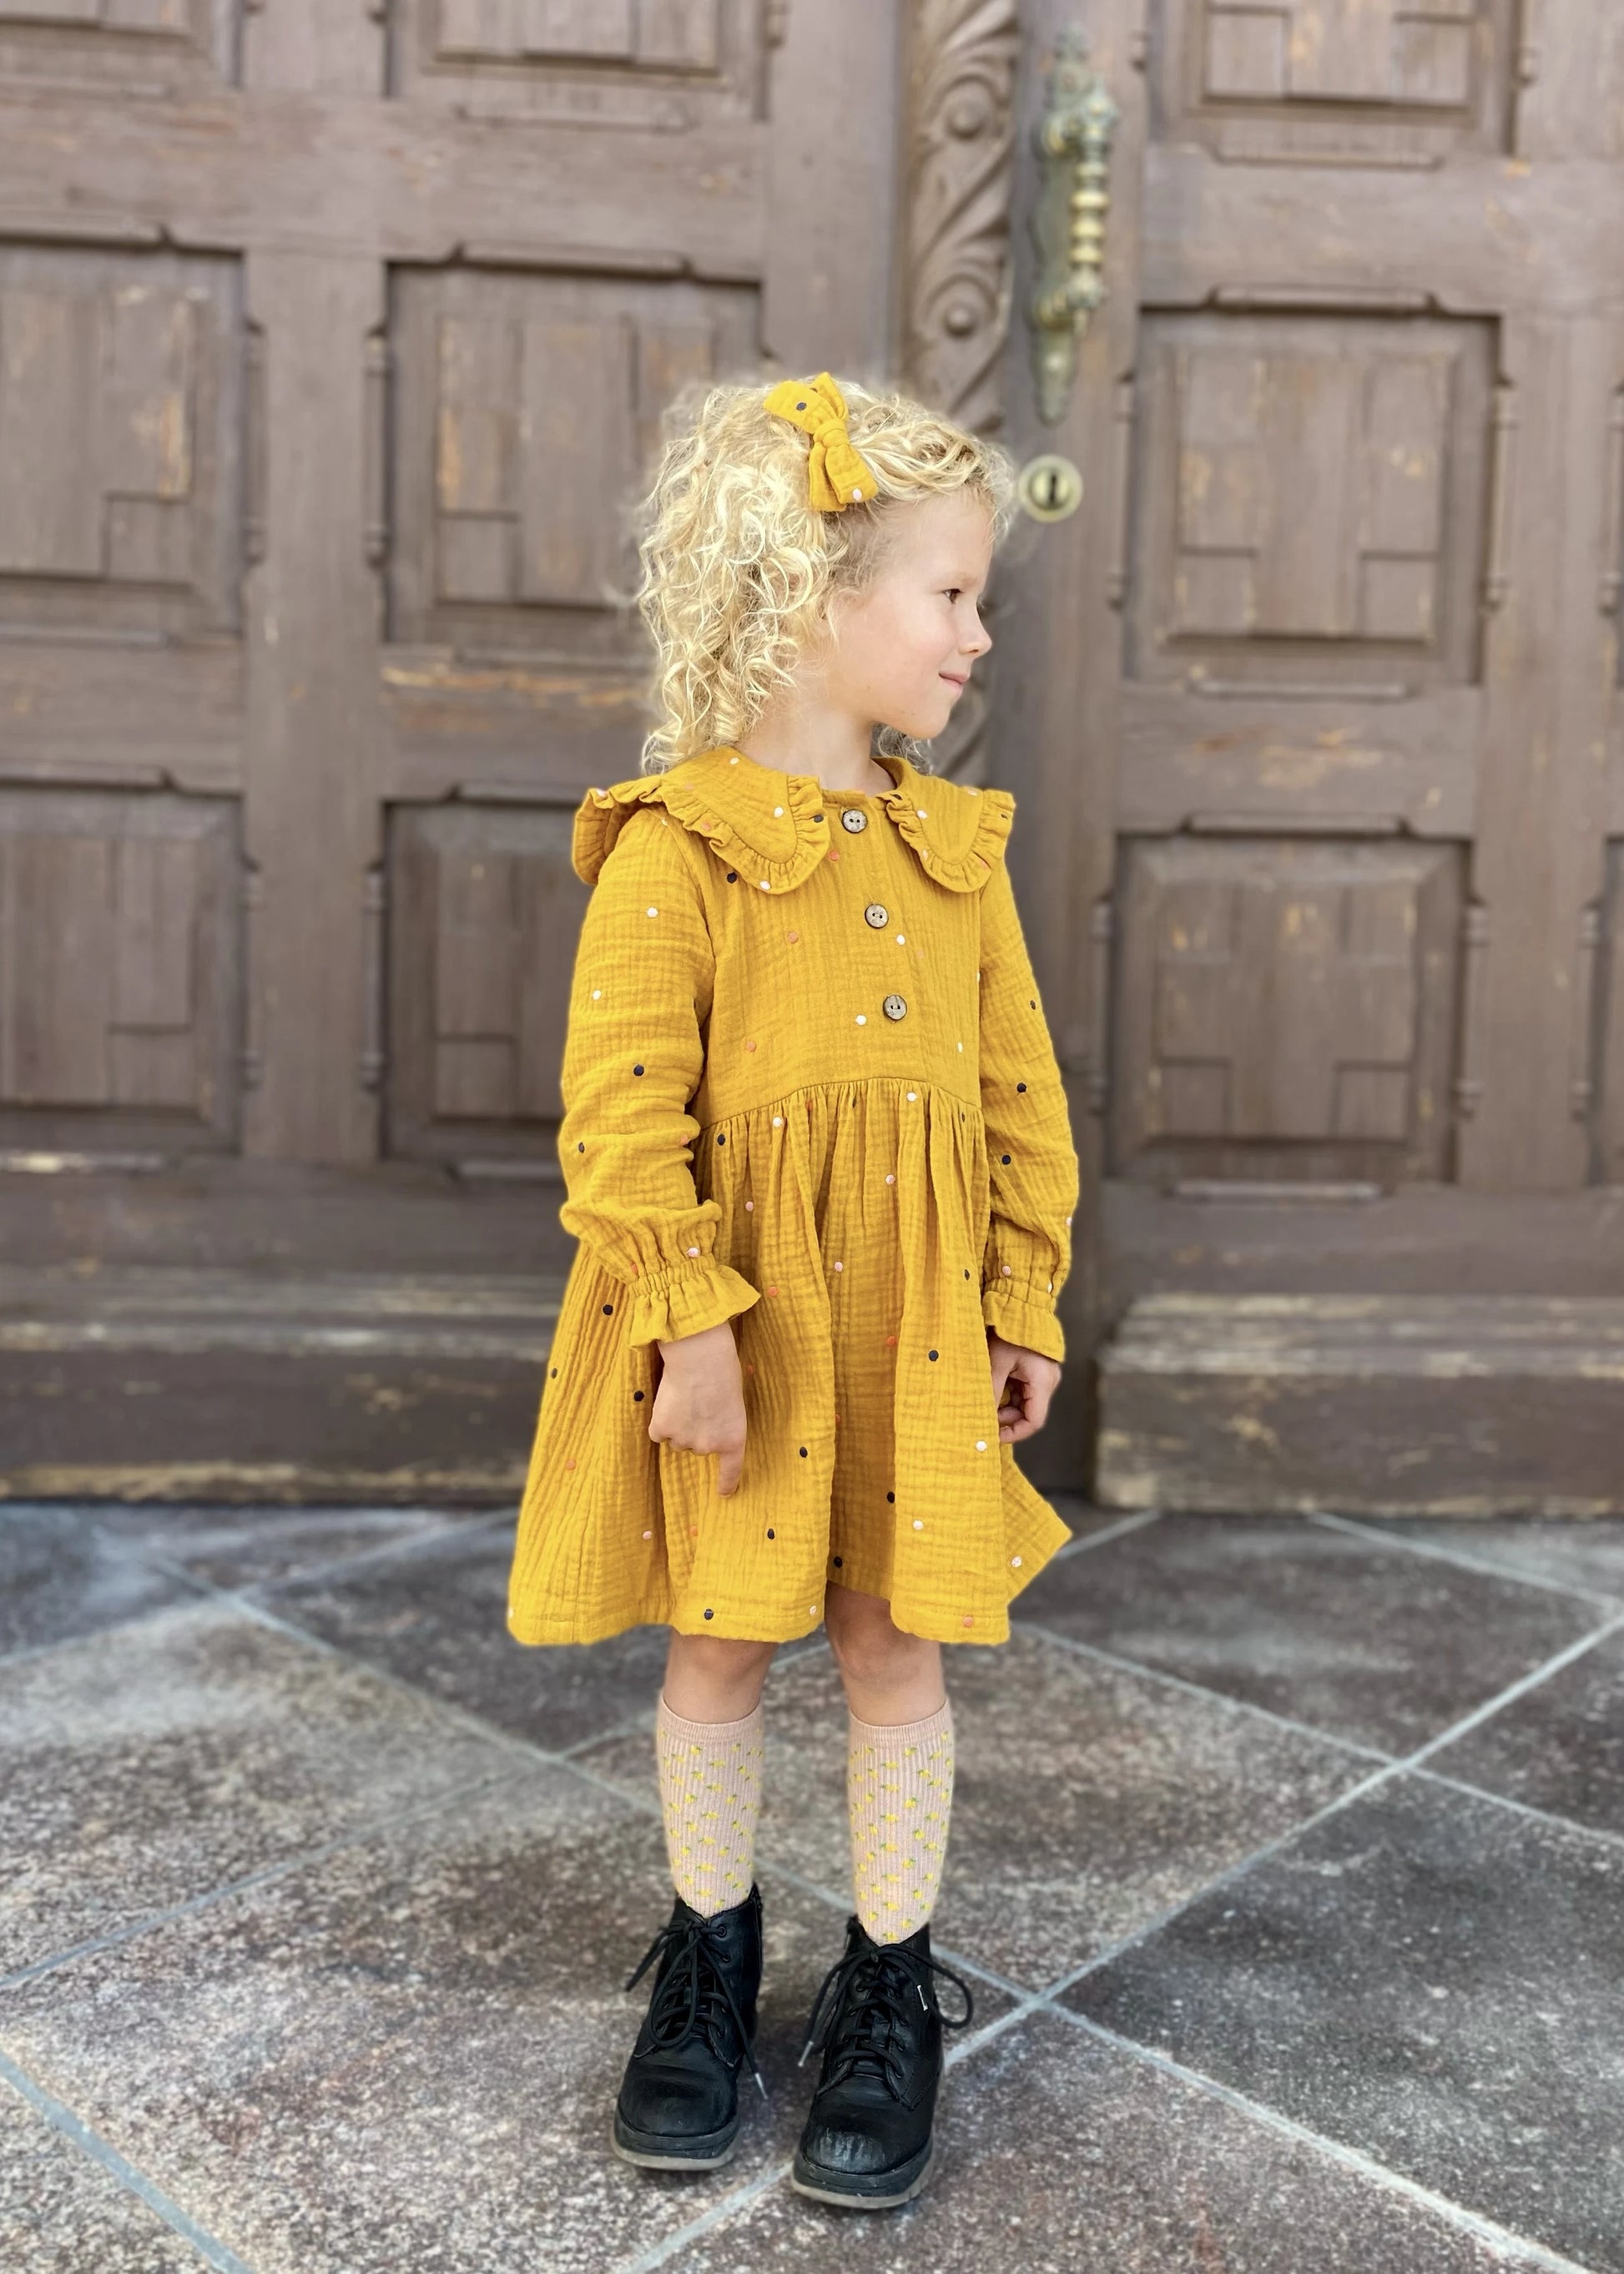 mergaitiska puosni suknele ir plauku kaspinelis, spalva geltona, rankoves ilgos, rudenine